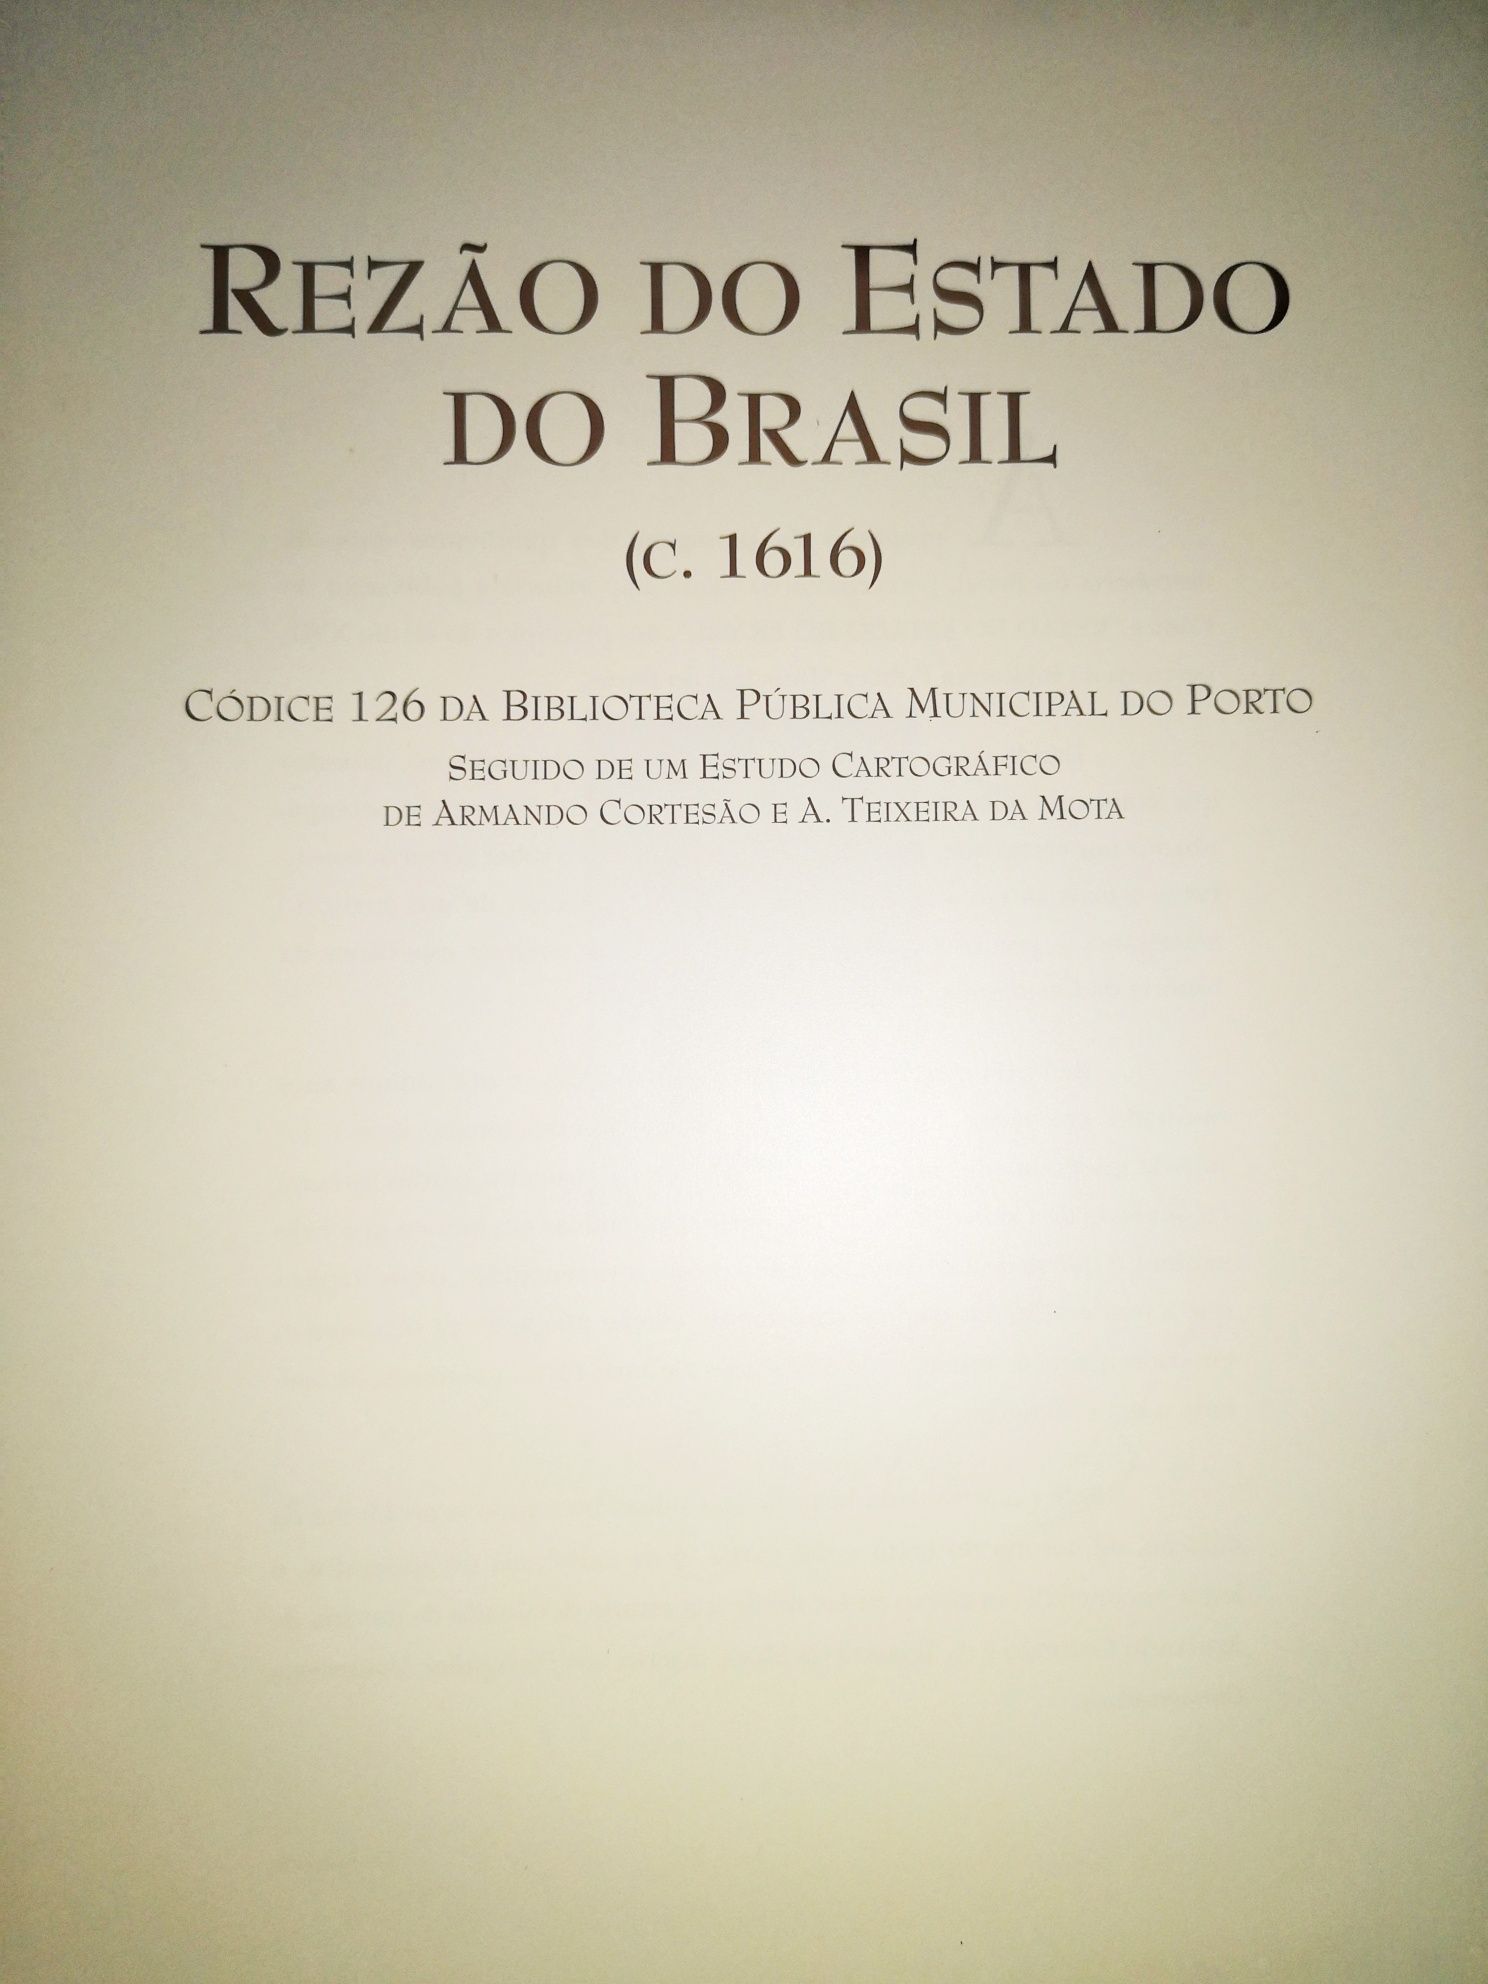 Rezão do estado do Brasil - História do Brasil - NOVO